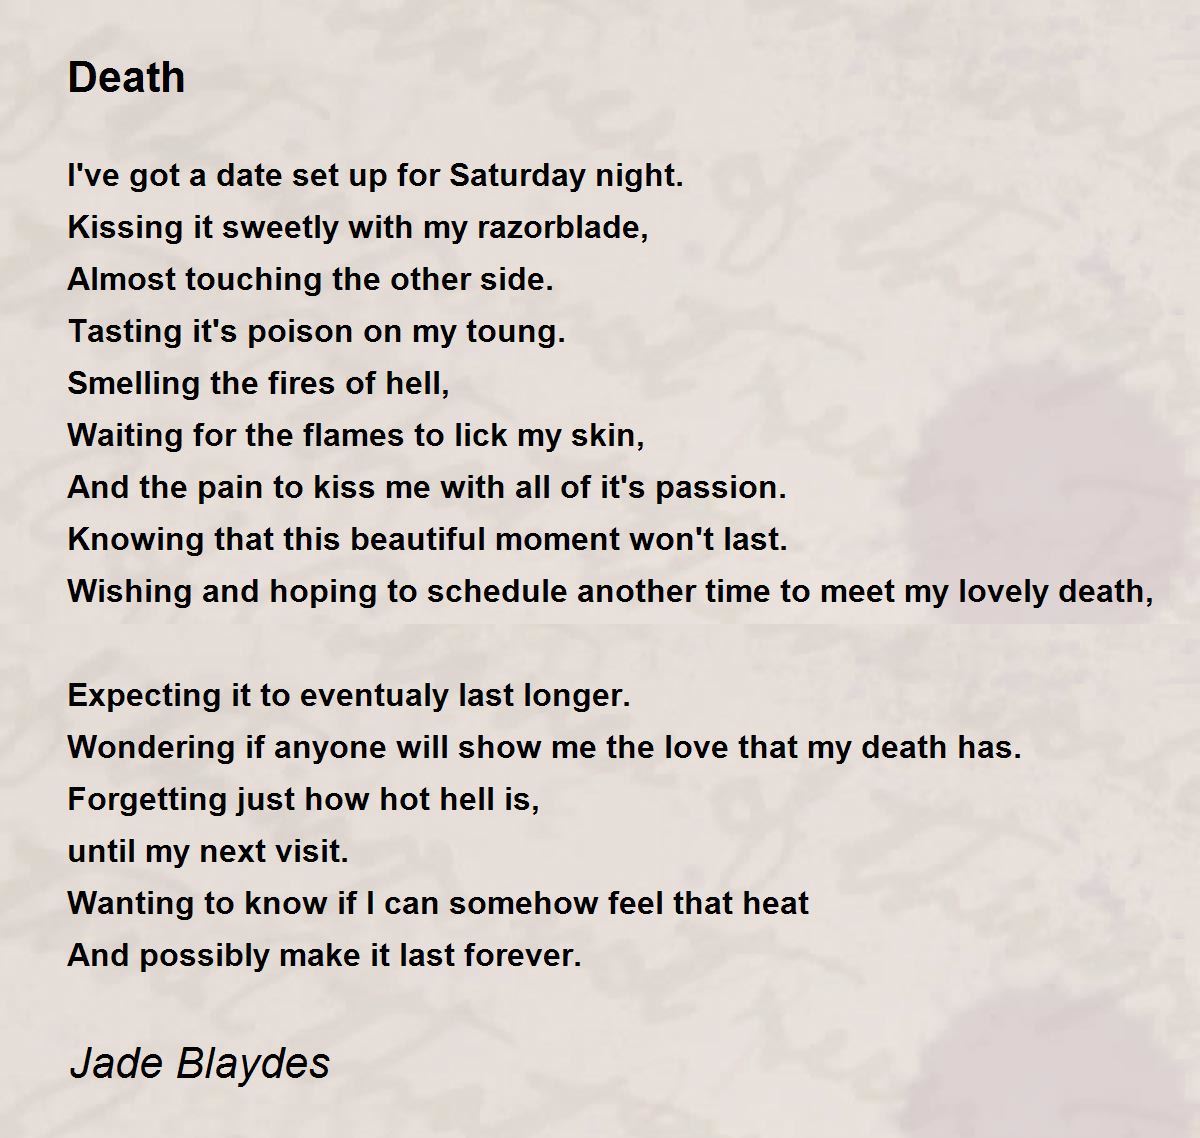 Death - Death Poem by Jade Blaydes